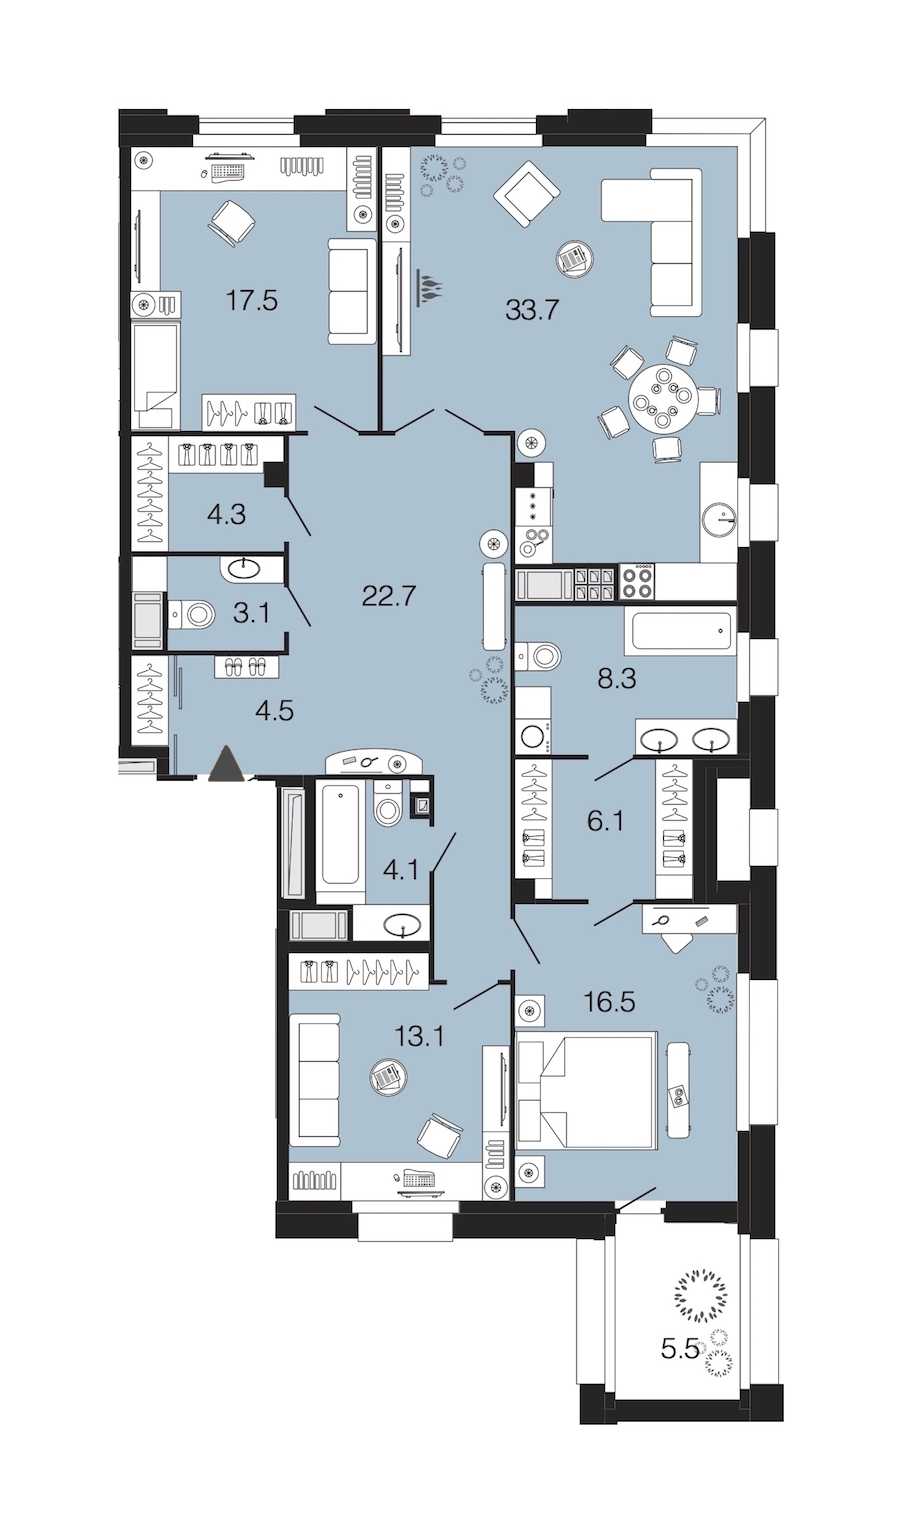 Трехкомнатная квартира в : площадь 133.9 м2 , этаж: 7 – купить в Санкт-Петербурге